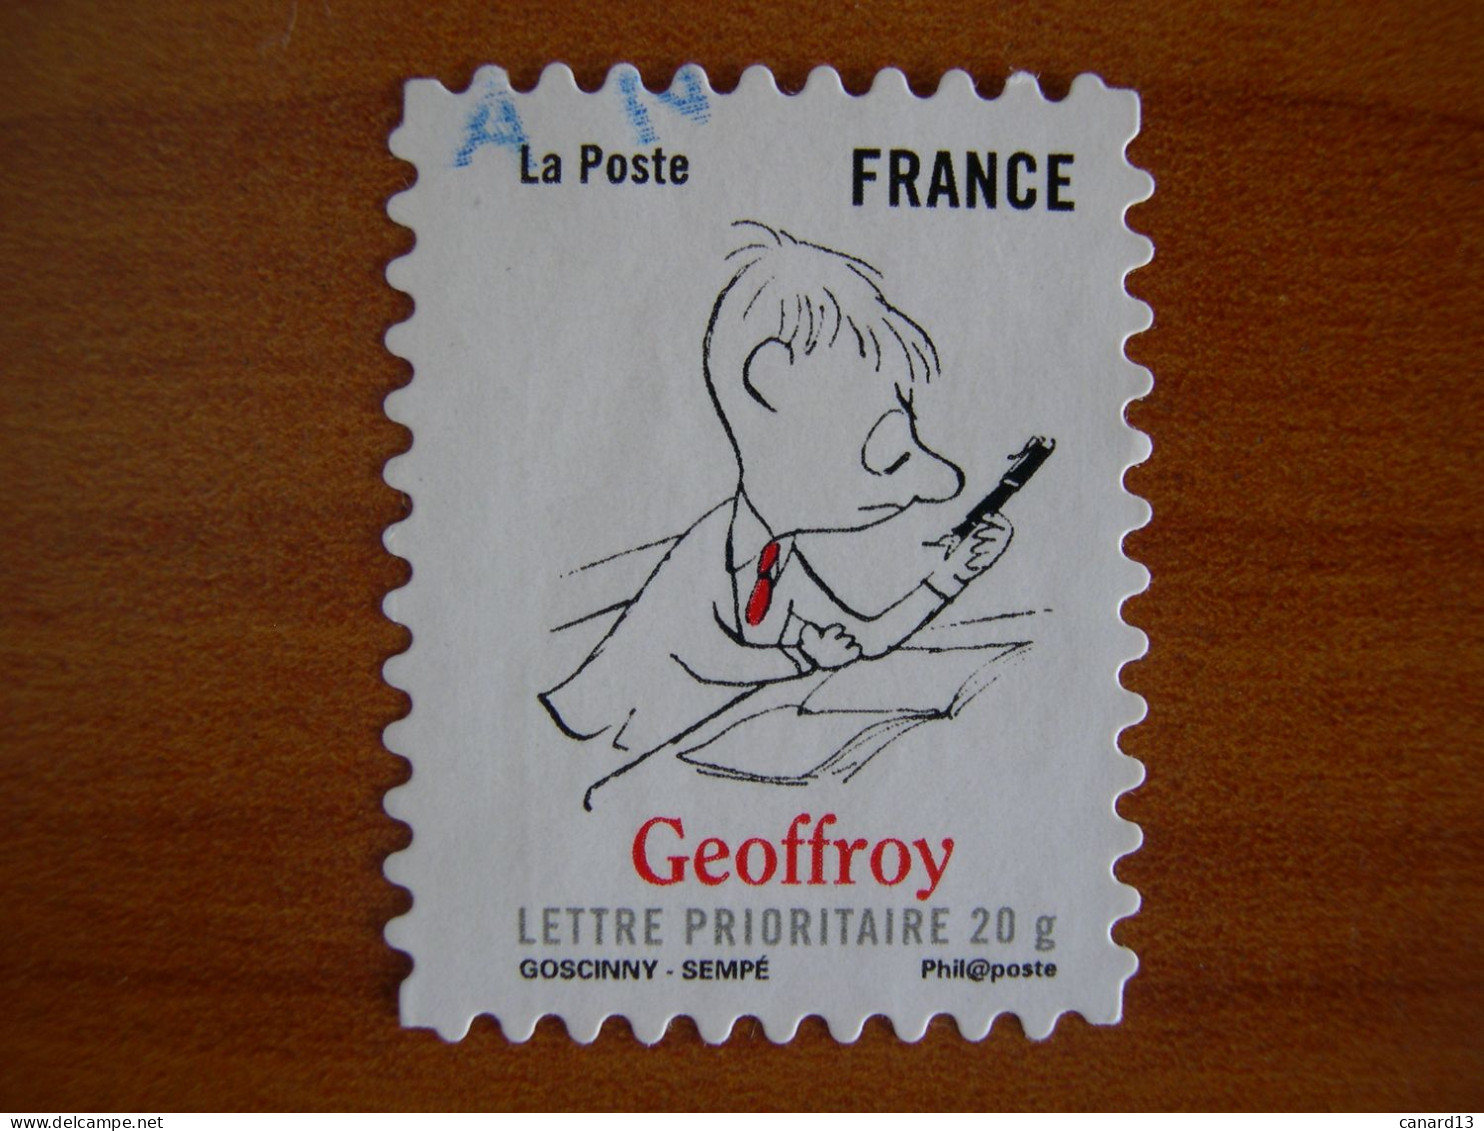 France Obl   N° 355 Cachet Rond Bleu - Used Stamps